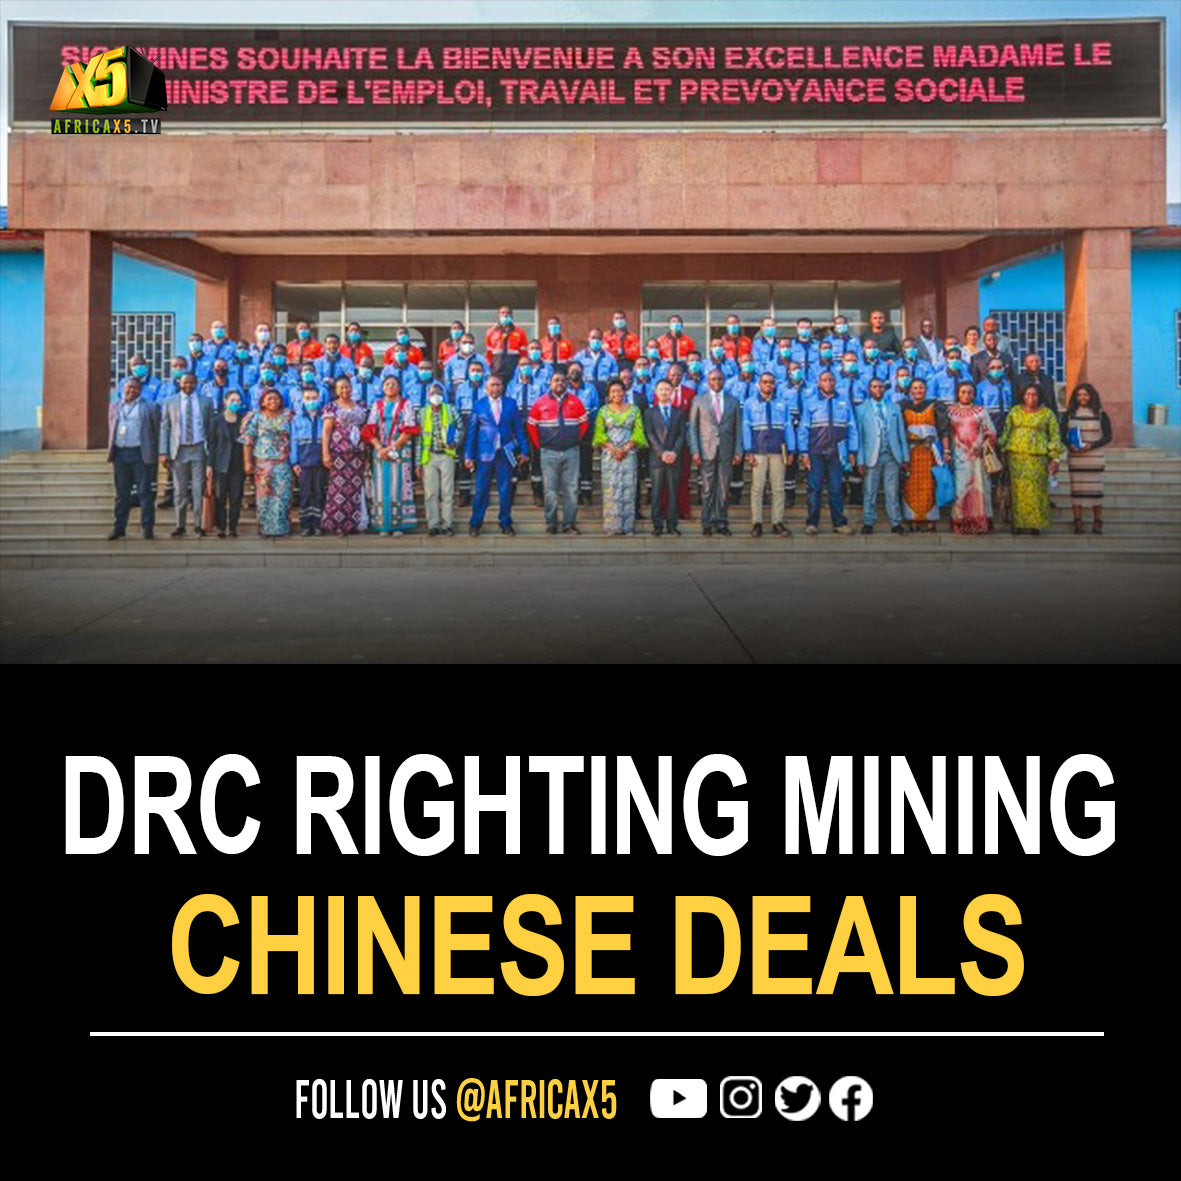 Kinshasa Righting Previous Chinese Mining Deals